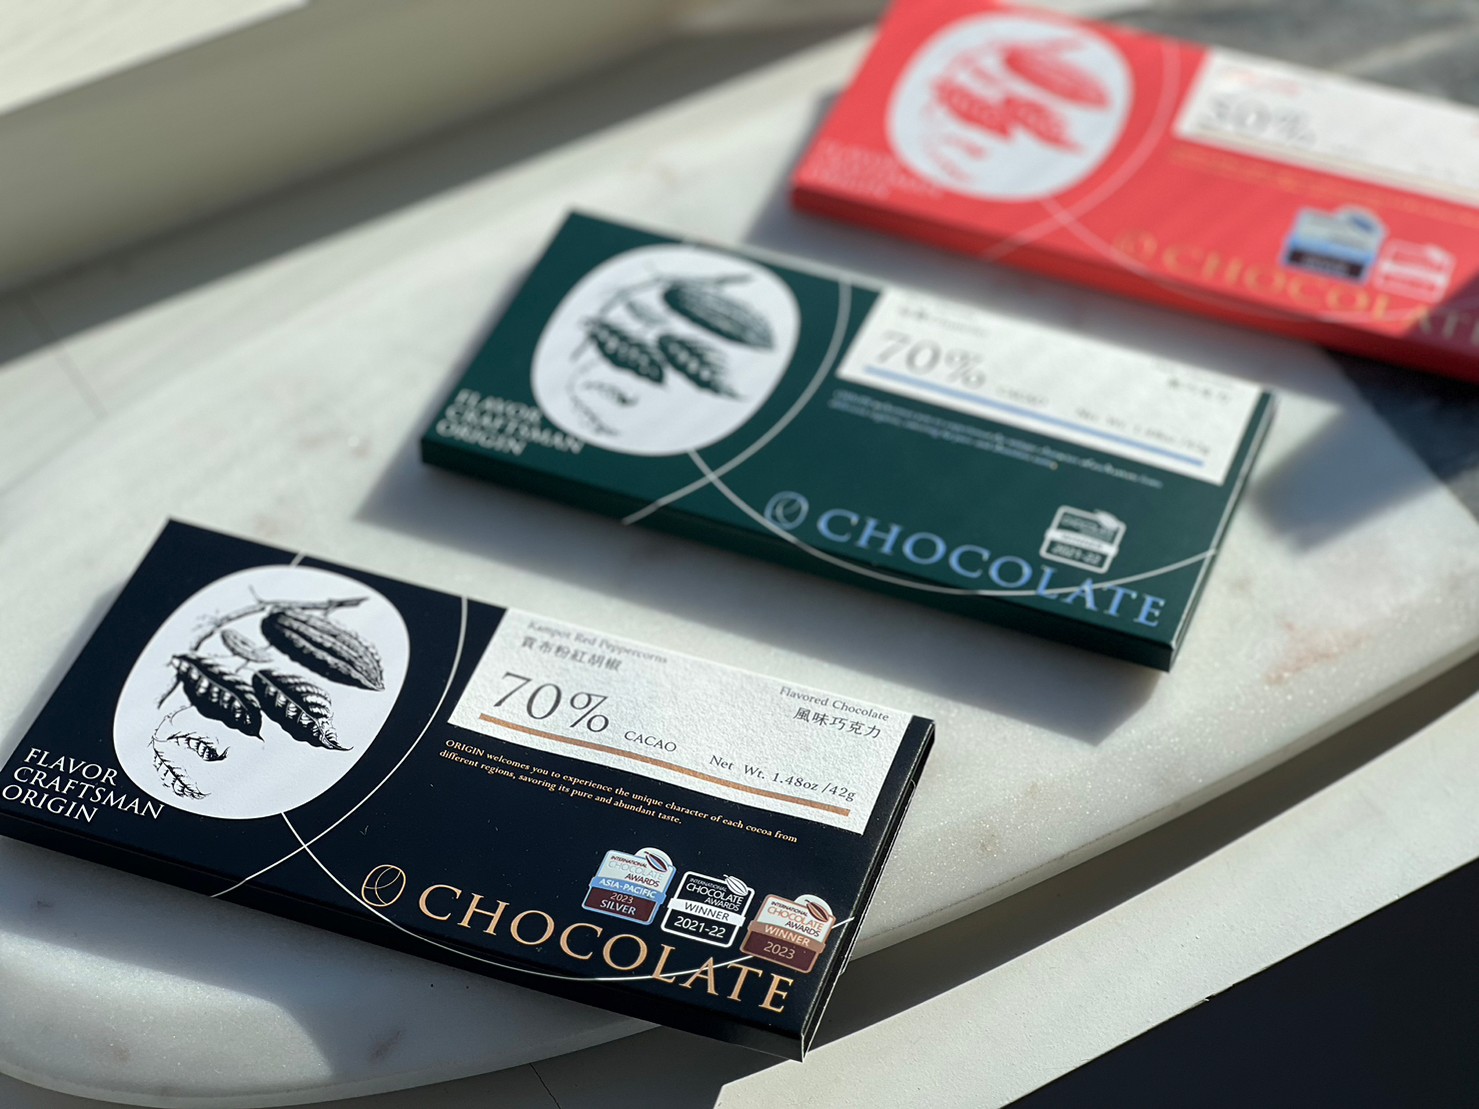 得 獎 巧 克 力 ， 7 0 % 貢 布 粉 紅 胡 椒 風 味 巧 克 力 、 7 0 % 祕 魯 C h u n c h o 黑 巧 克 力 、 5 0 % 台 灣 紅 烏 龍 牛 奶 巧 克 力 。 